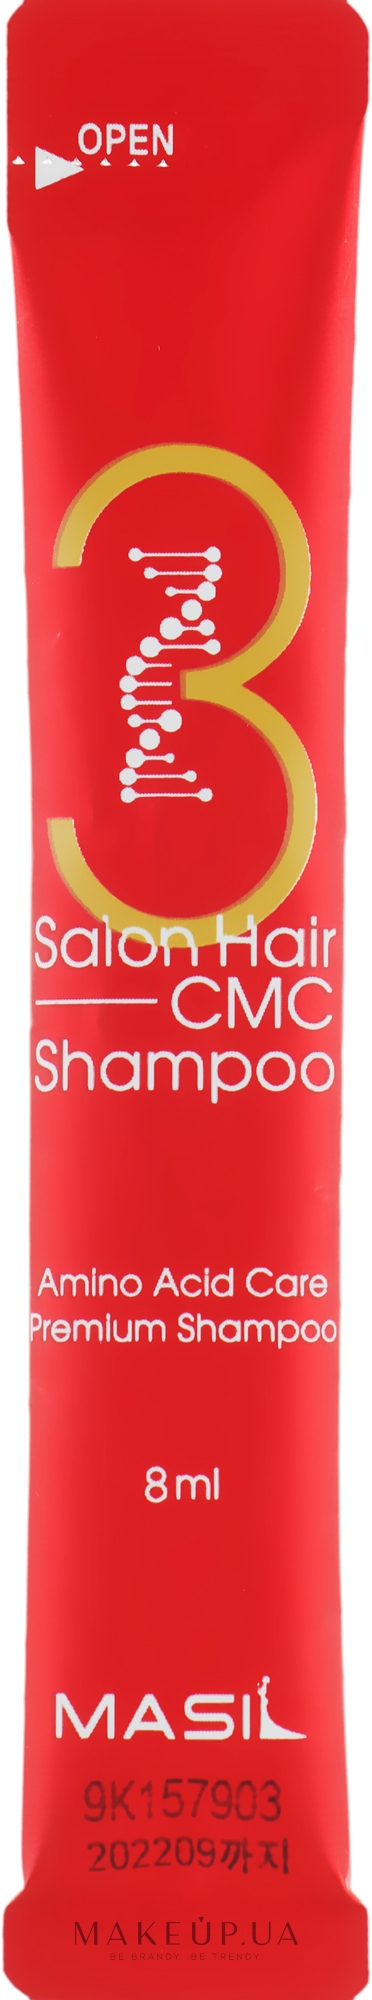 Шампунь с аминокислотами - Masil 3 Salon Hair CMC Shampoo (пробник) — фото 1x8ml